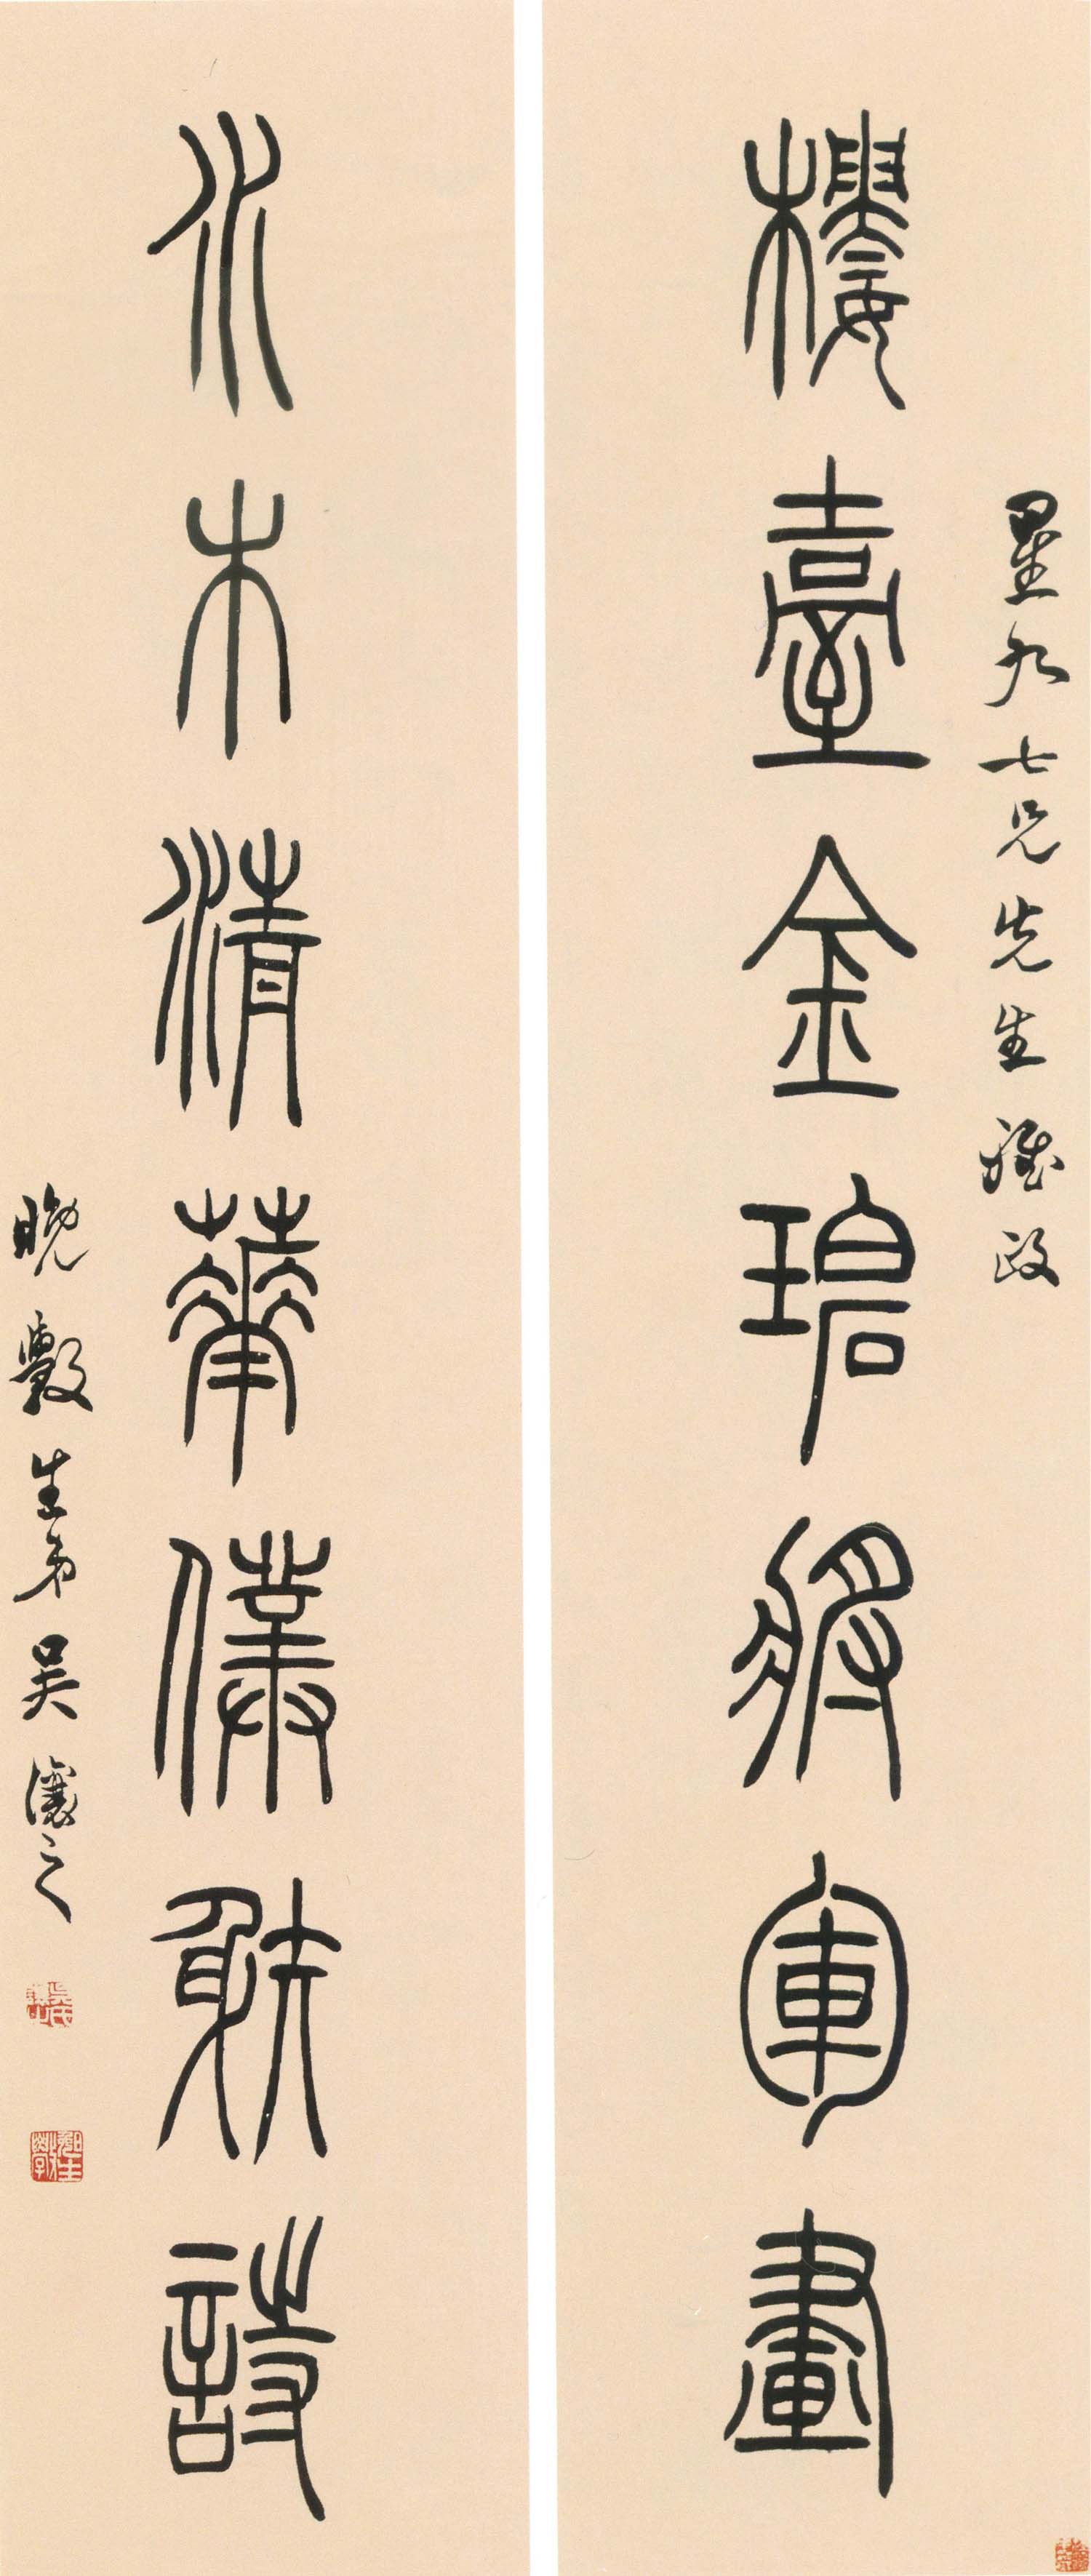 吴熙载《篆书楼台水木七言联》-上海博物馆藏(图1)